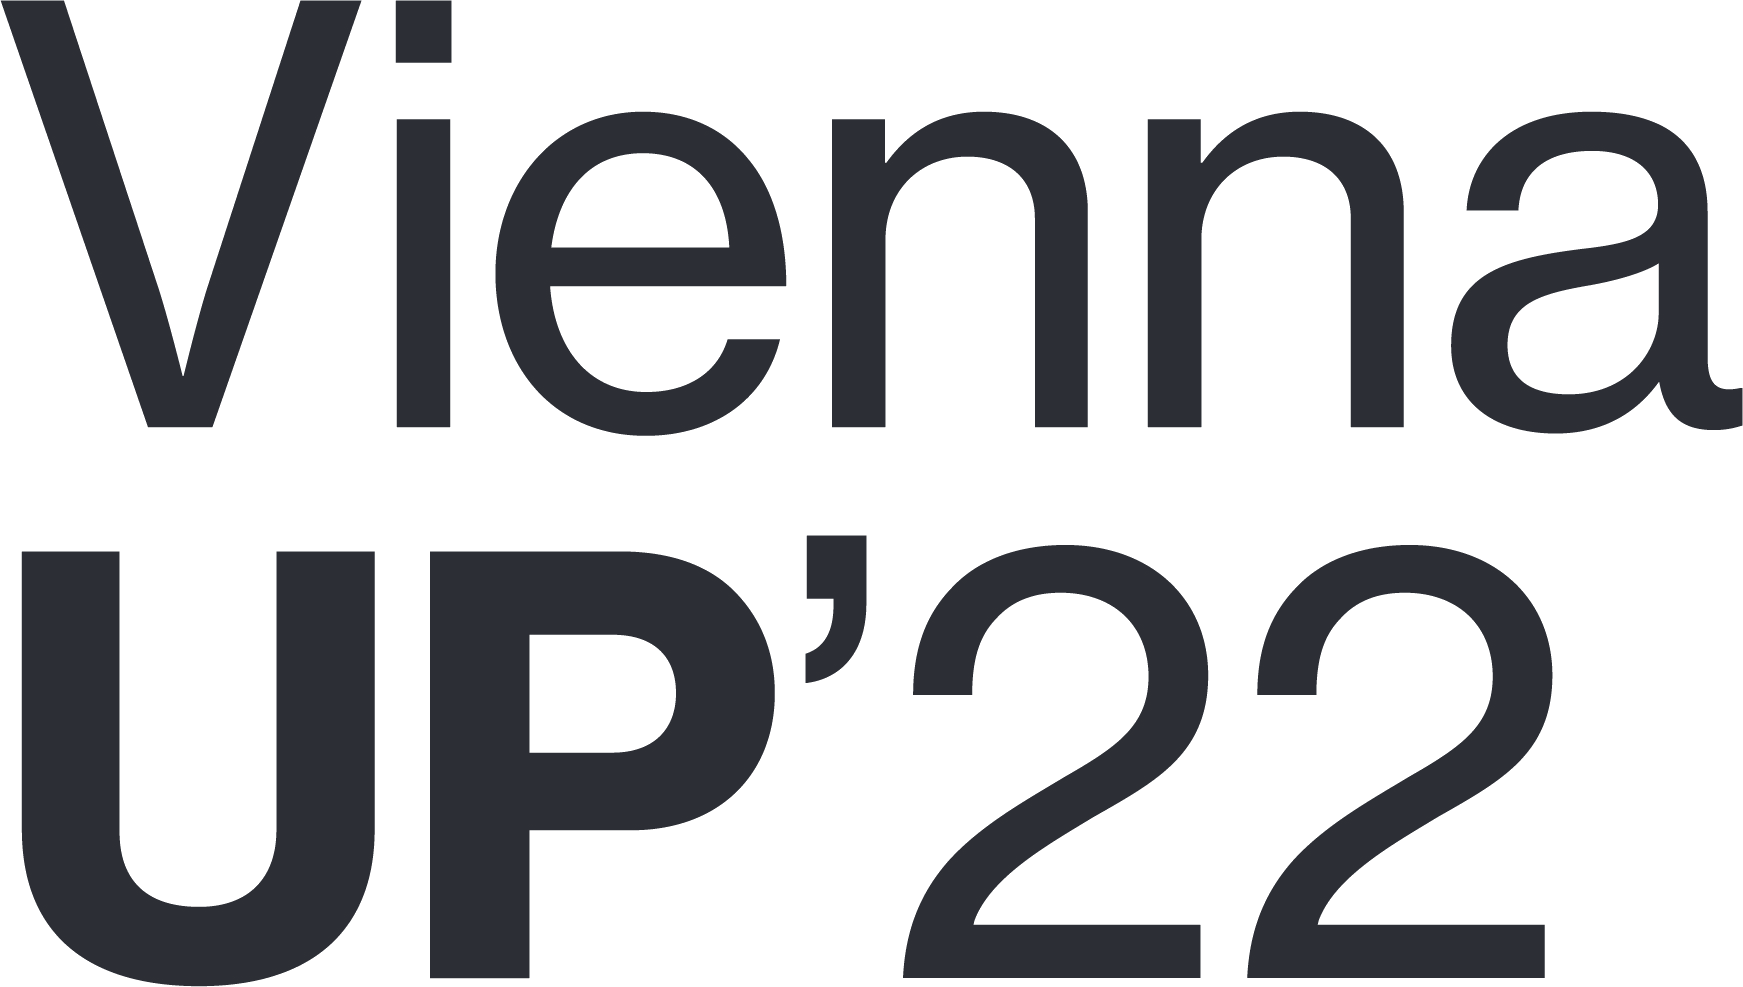 ViennaUP's logo